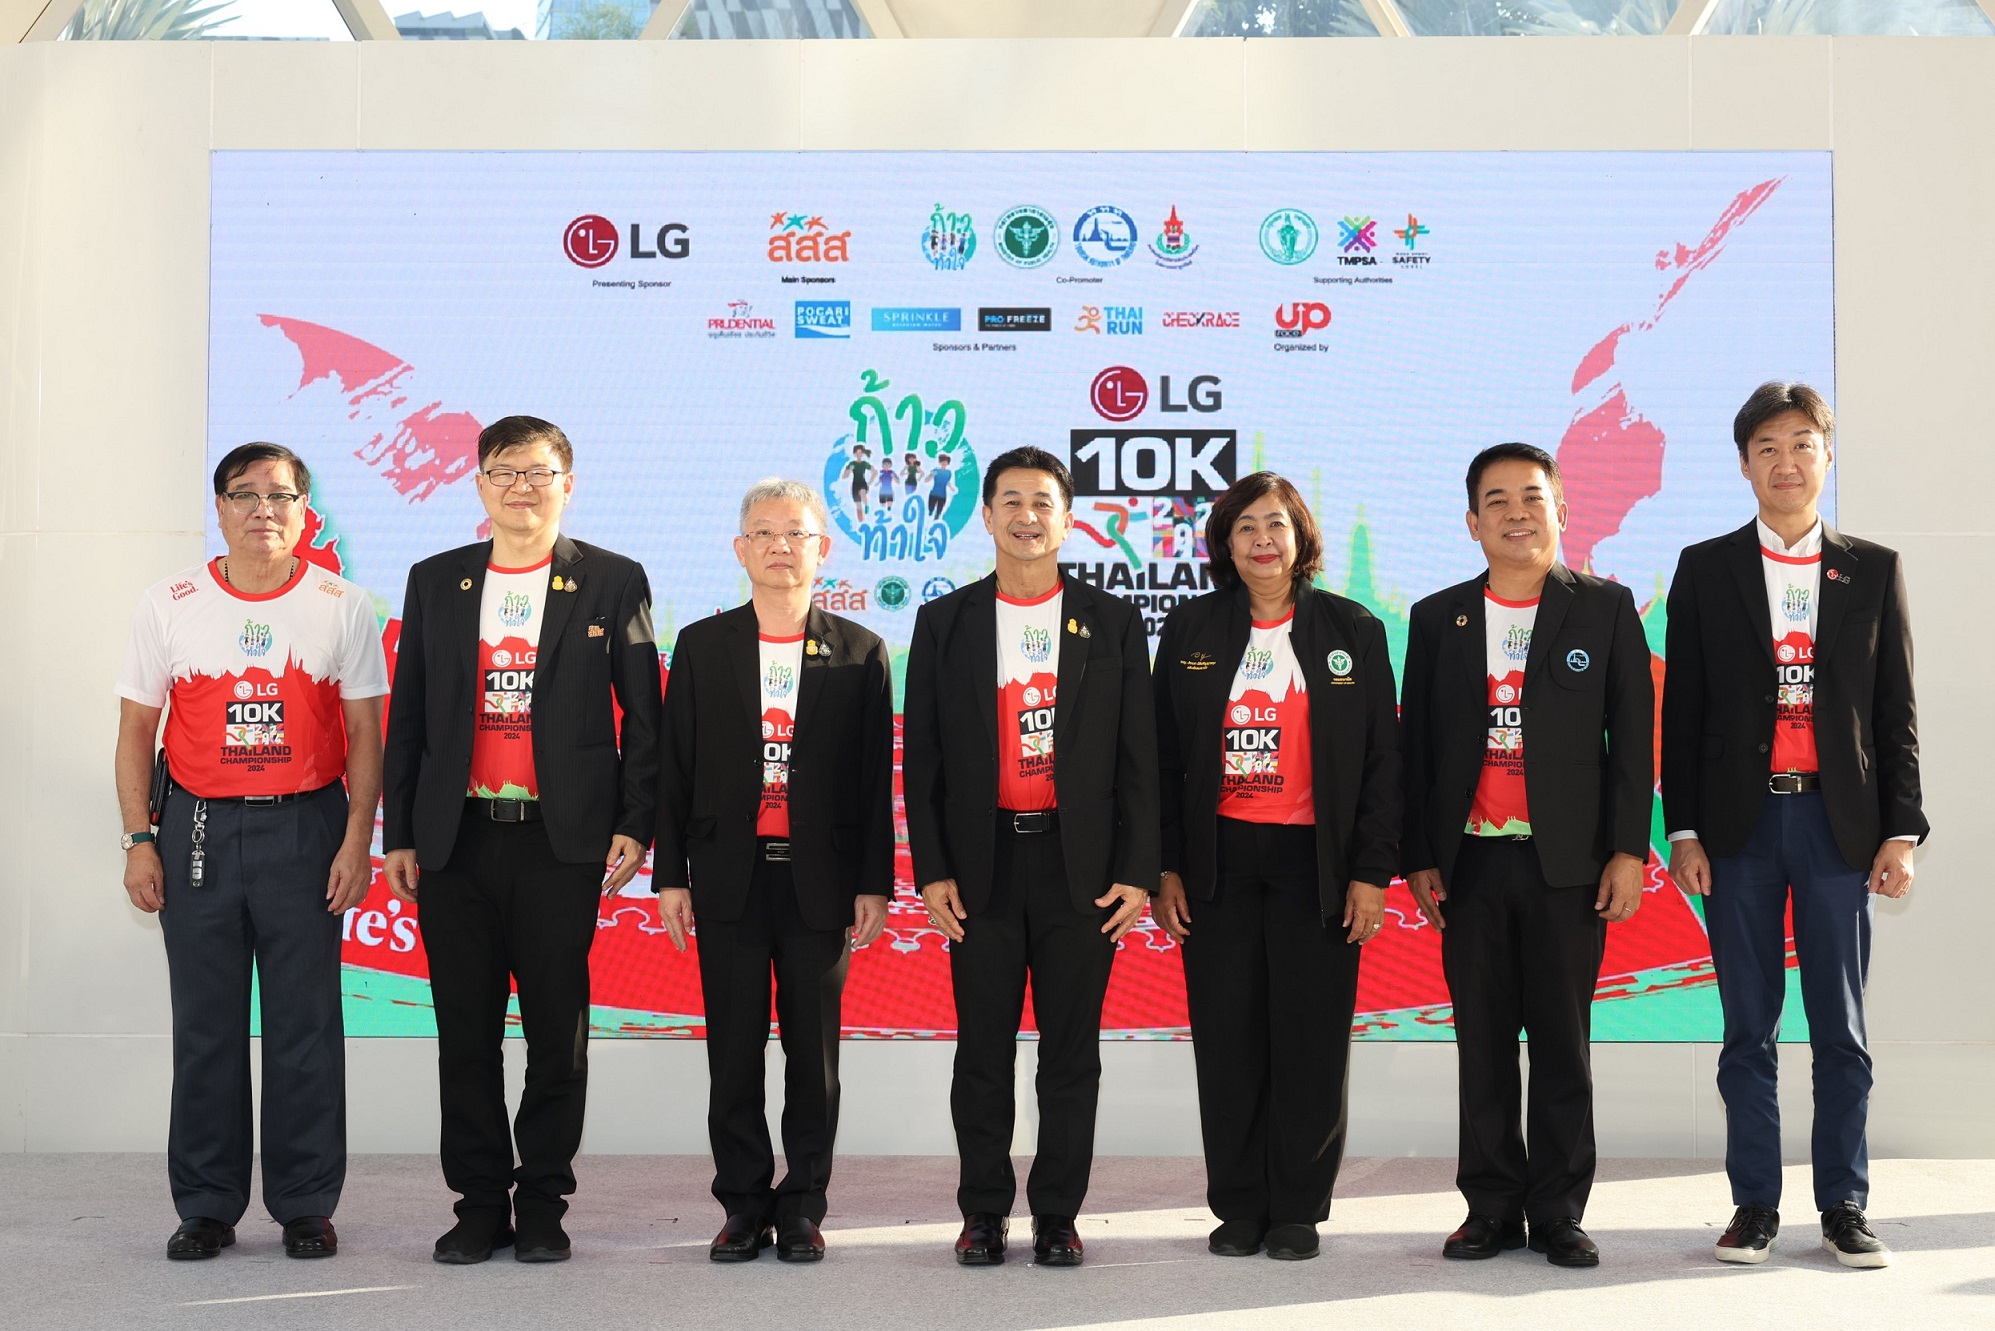 แอลจี จับมือ สมาคมก้าวท้าใจ จัดการแข่งขันวิ่ง ‘ก้าวท้าใจ 10K Thailand Championship 2024’ สุดยิ่งใหญ่ พร้อมเดินหน้ายกระดับมาตรฐานการแข่งขันสู่งานเดิน-วิ่งระดับสากล สำนักพิมพ์แม่บ้าน